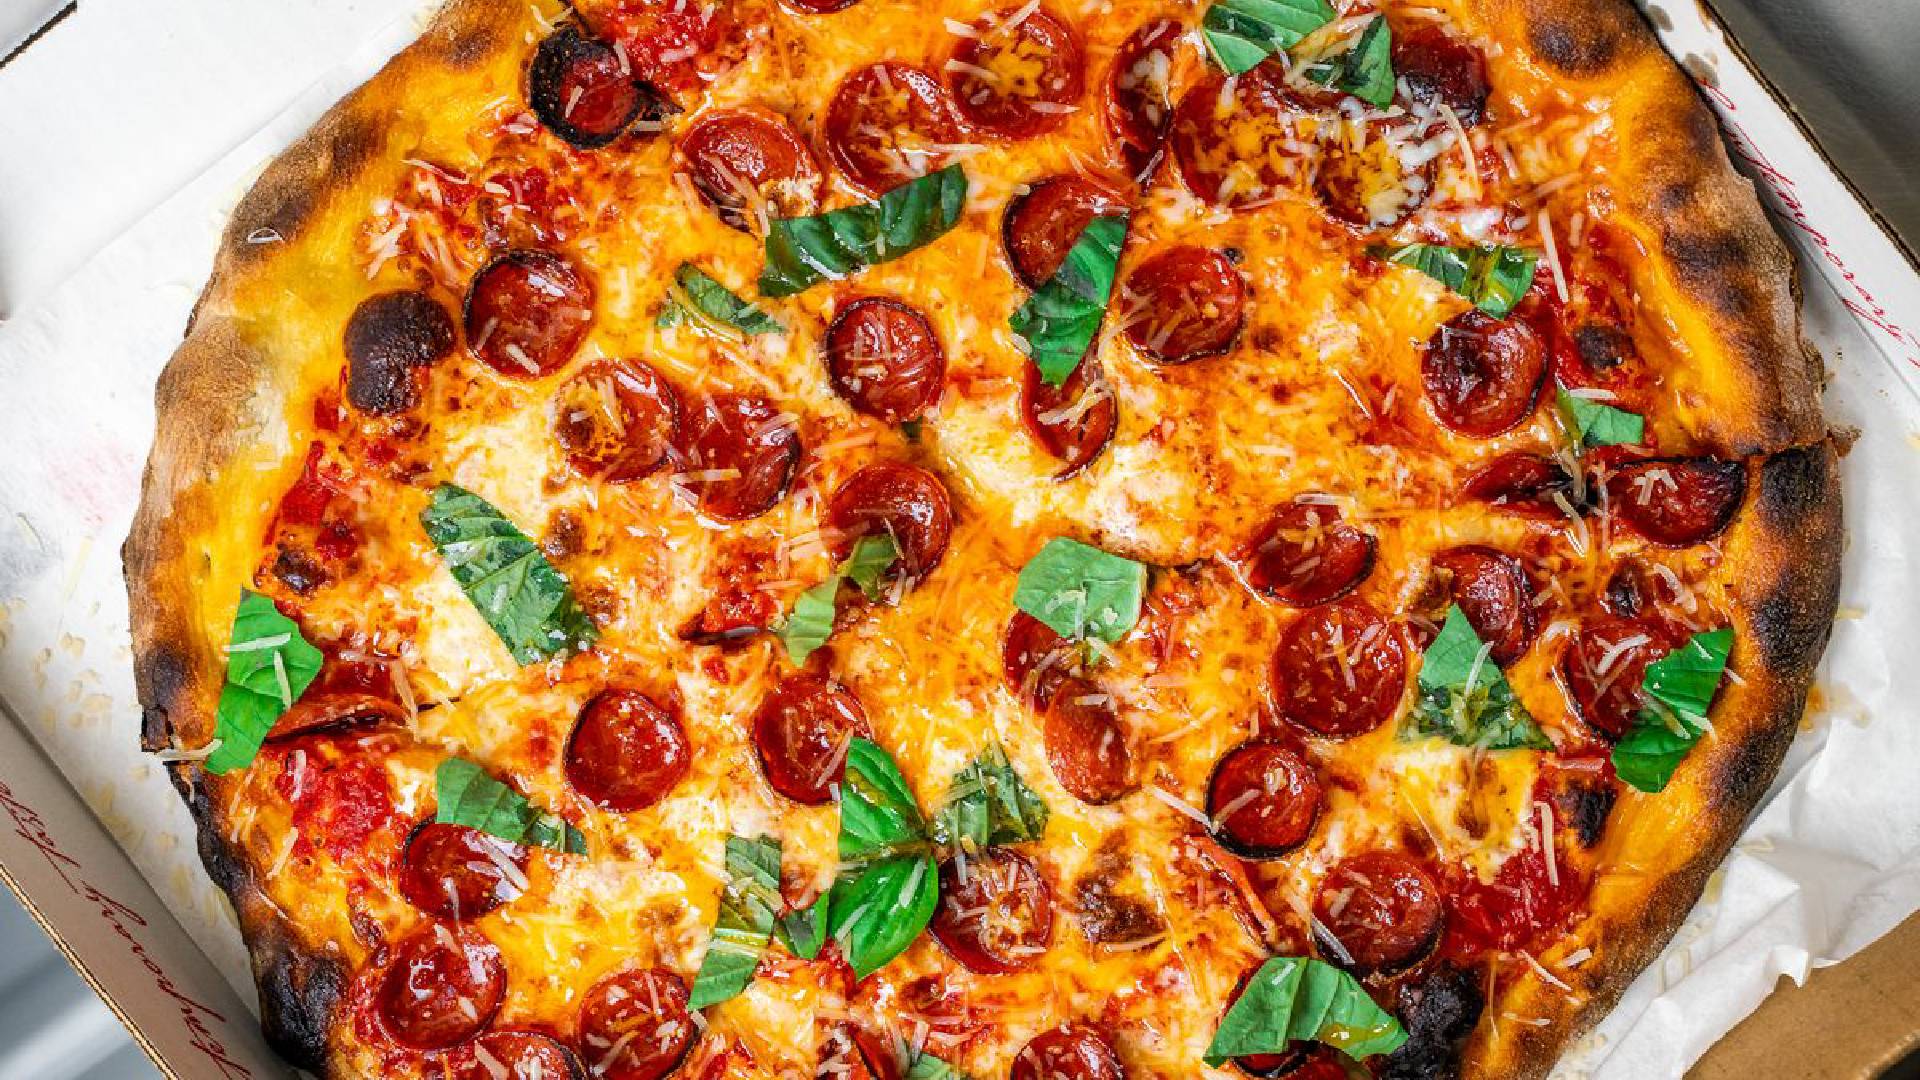 Best Pizza Spots in Charlotte